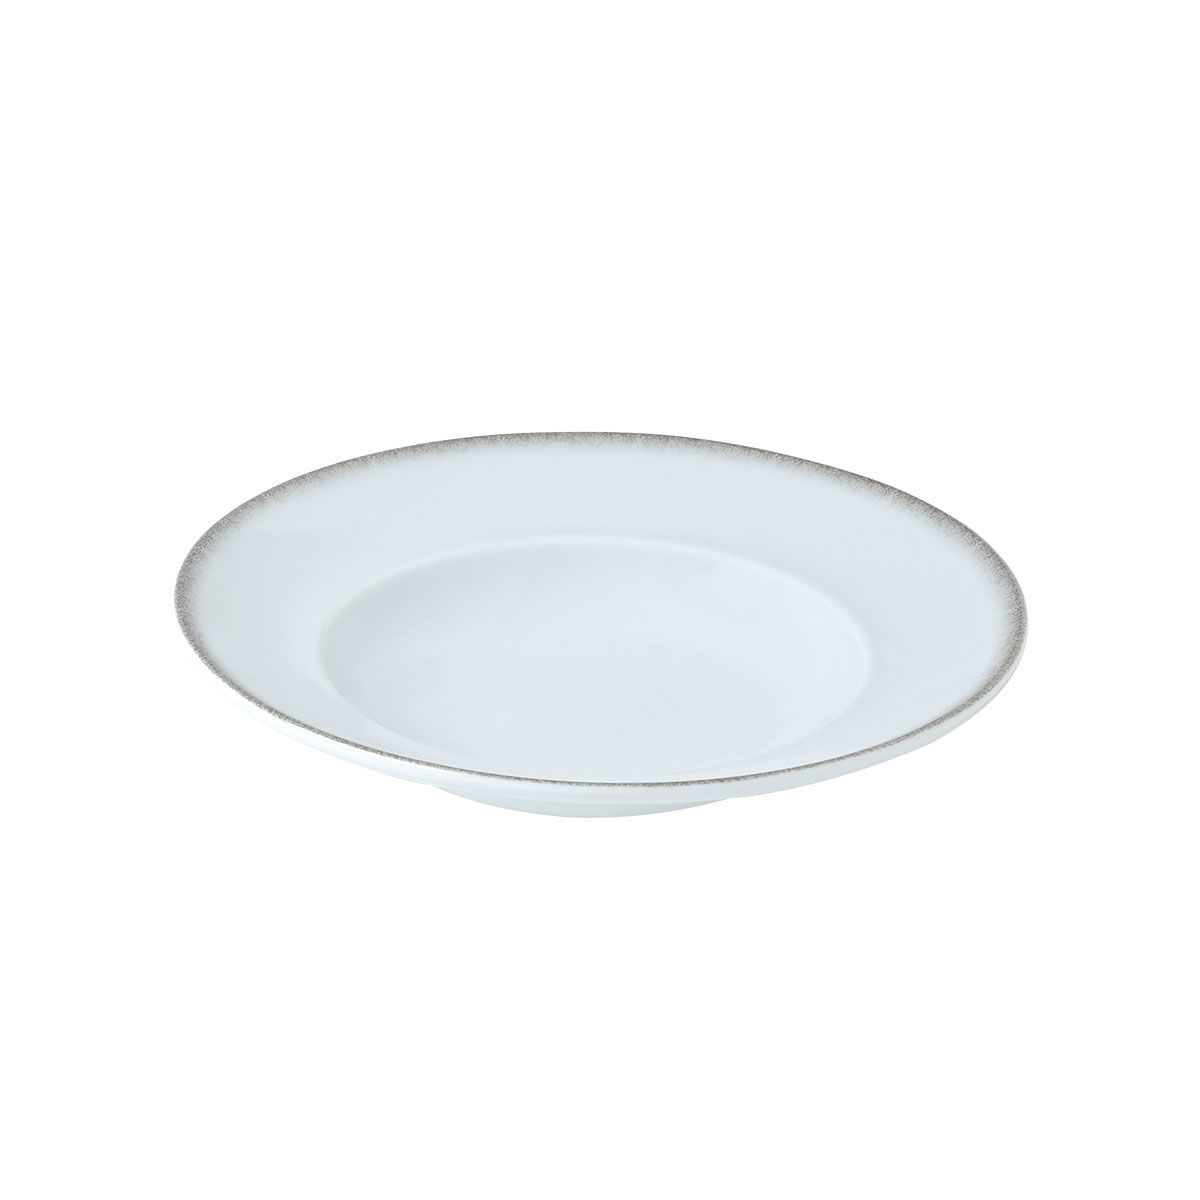 Πιάτο Ζυμαρικών Πορσελάνης Pearl White Estia 27εκ. 07-15374 (Σετ 2 Τεμάχια) (Υλικό: Πορσελάνη, Χρώμα: Λευκό, Μέγεθος: Μεμονωμένο) – estia – 07-15374